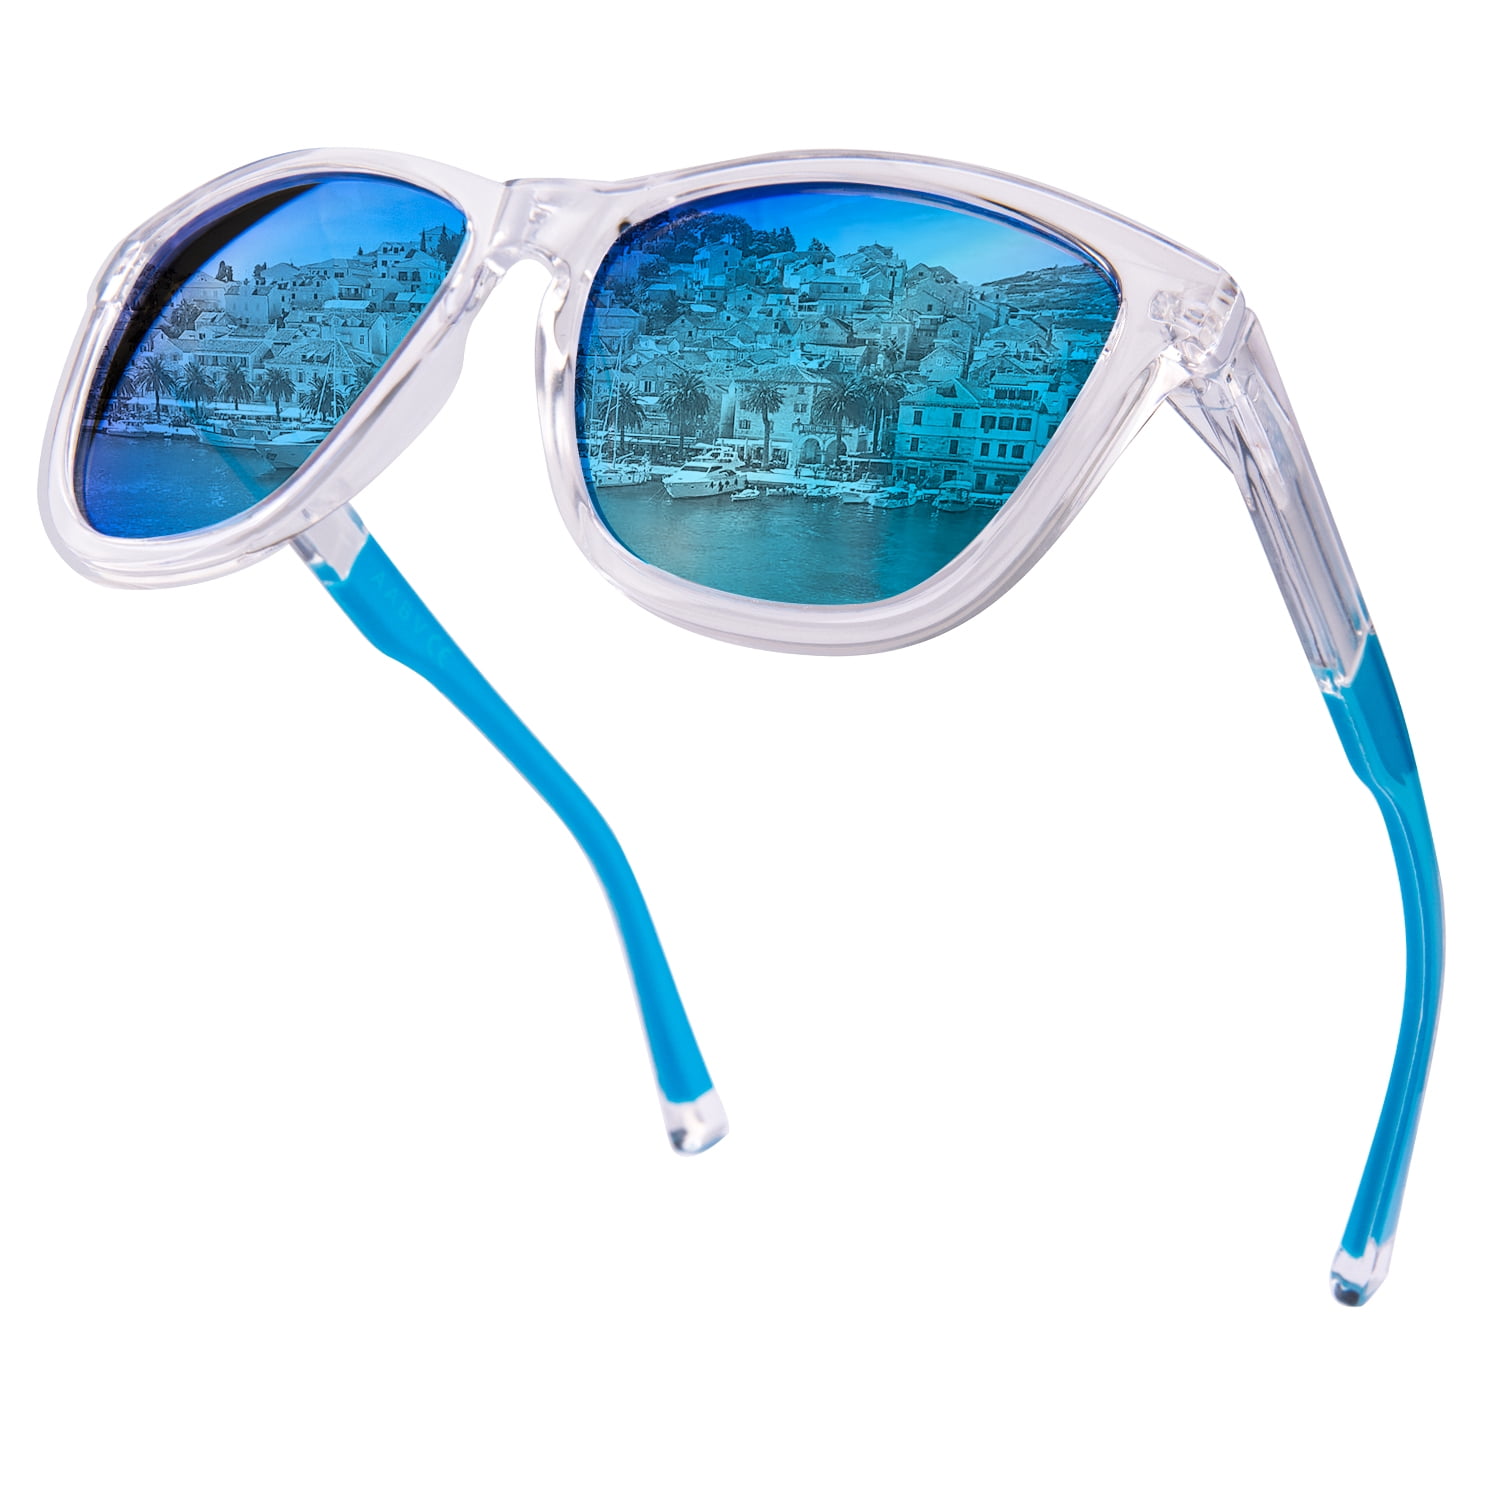 PolarizedPlus2 Lens Benefits - Clarity and Color | Shop Maui Jim Sunglasses